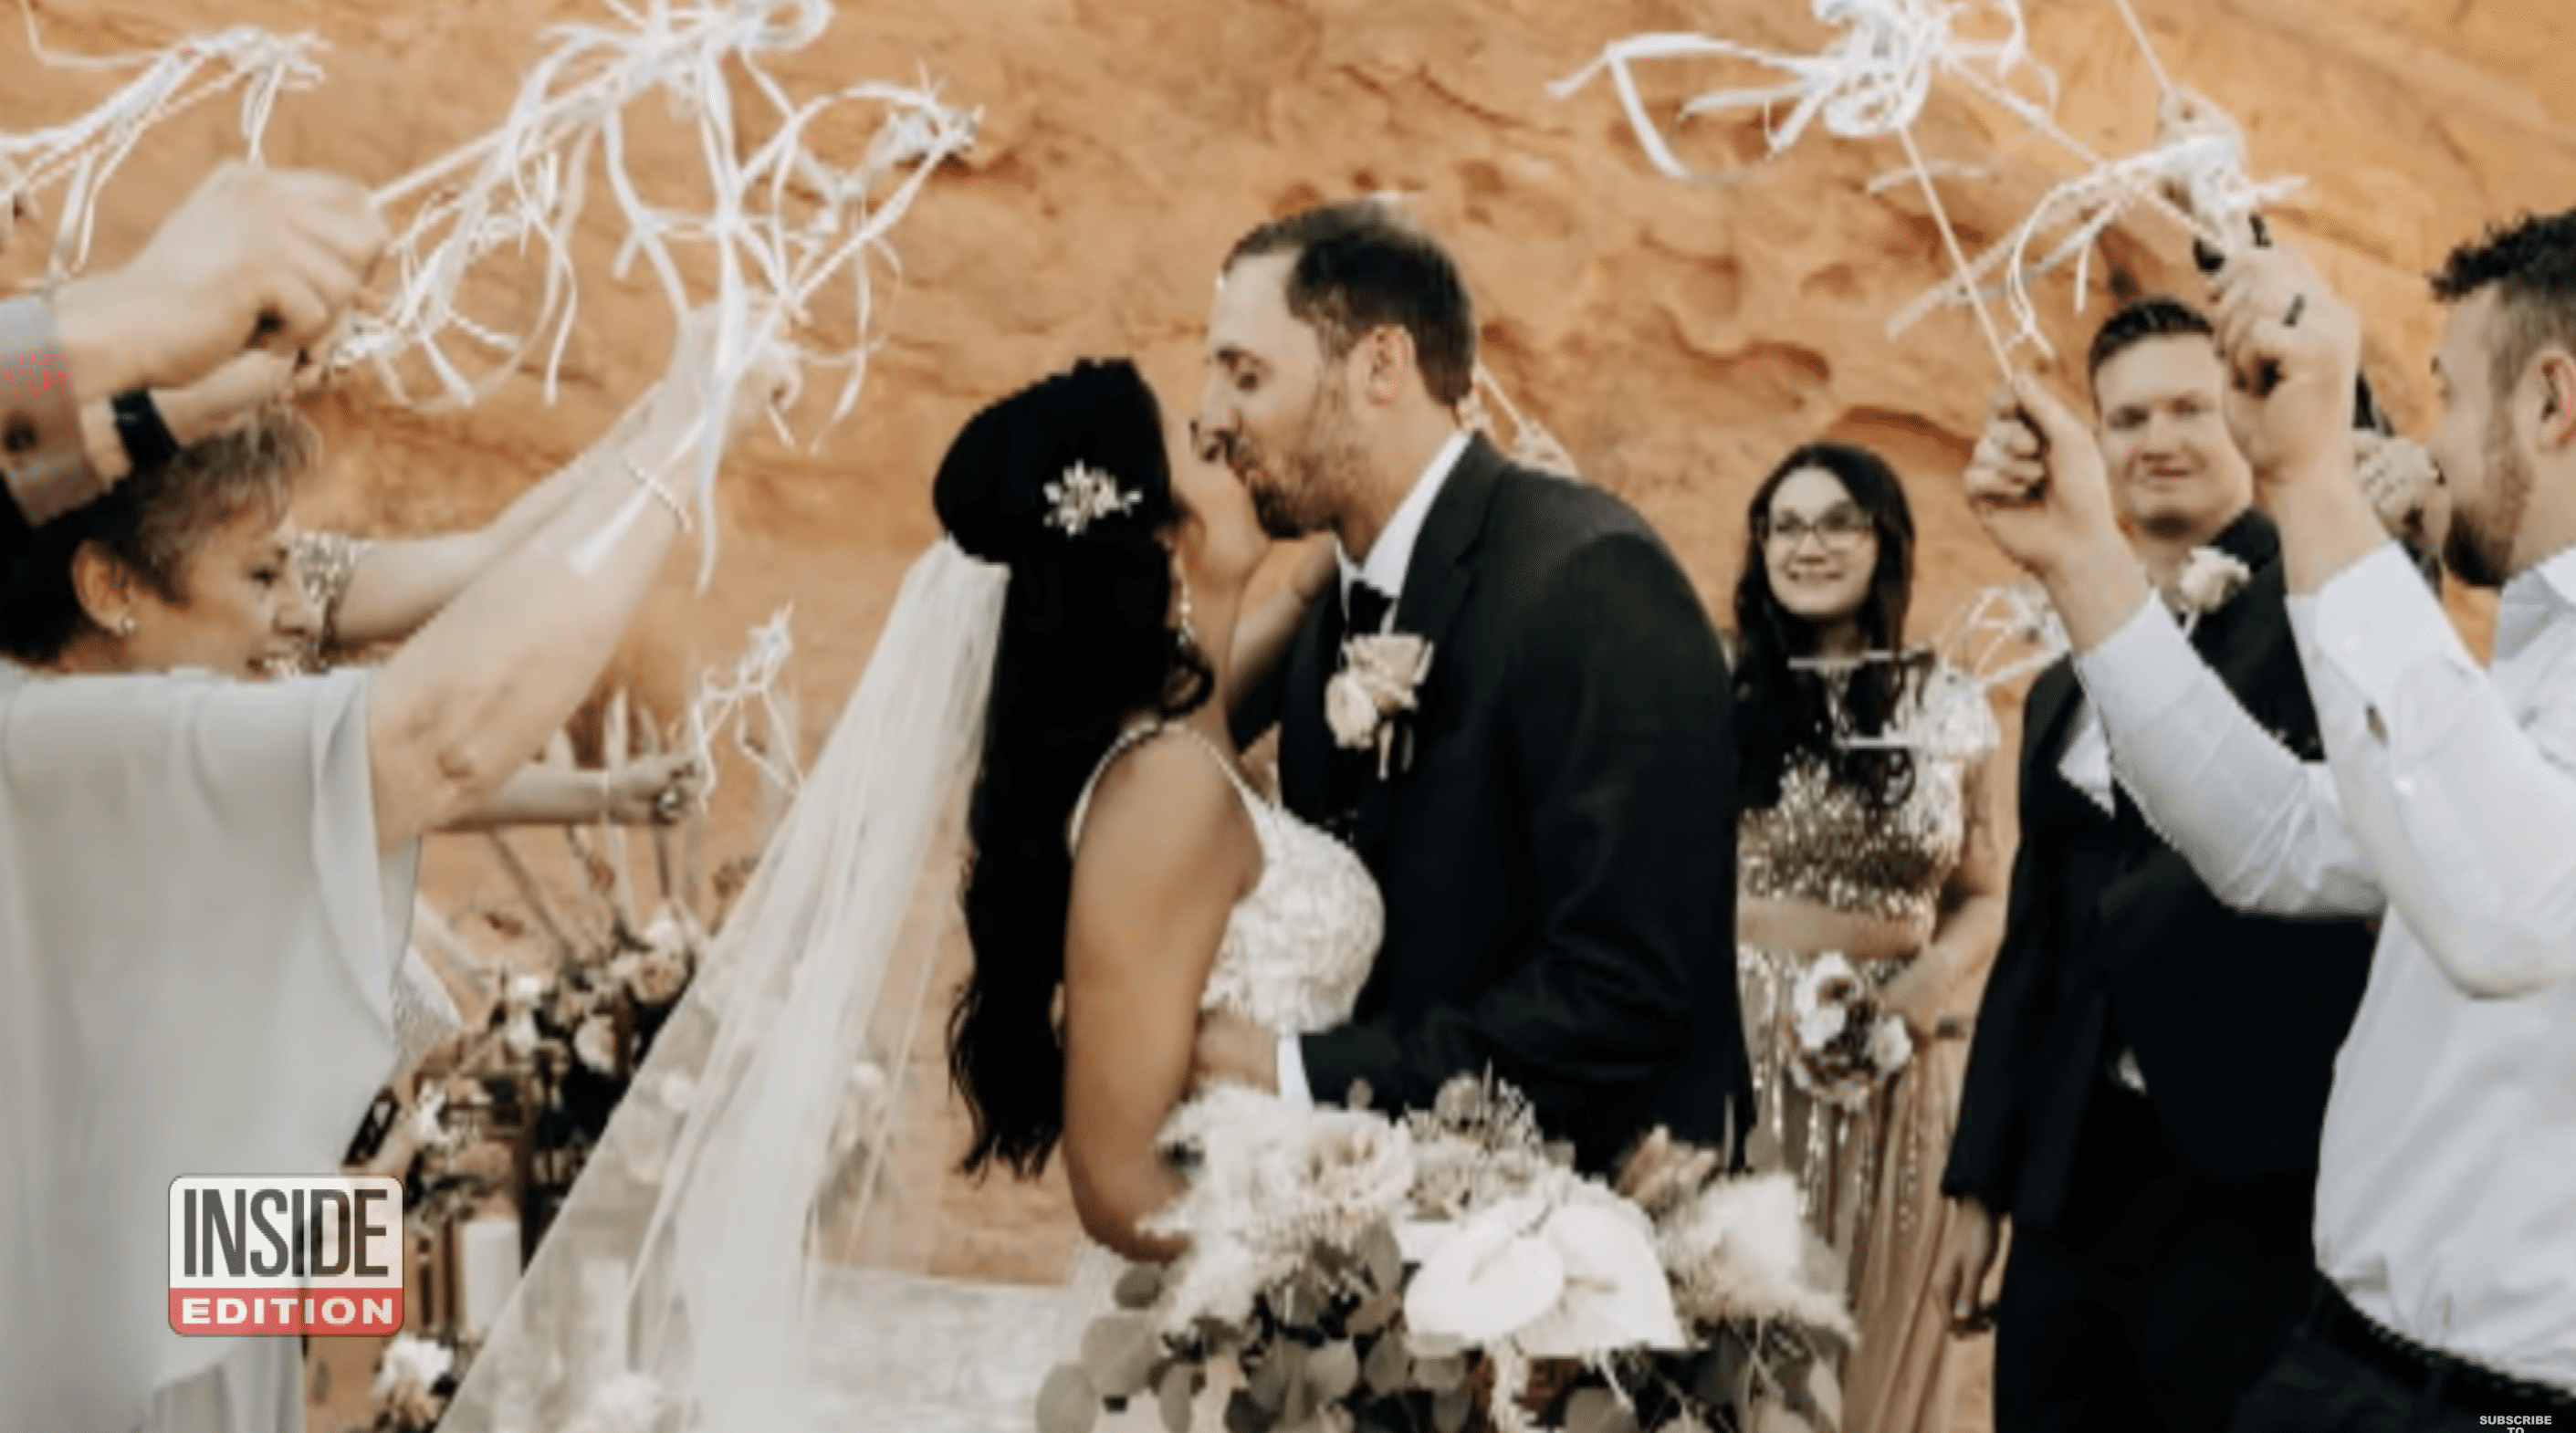 Hlavaty und Romano haben in Las Vegas ohne die Eltern der Braut geheiratet. | Quelle: YouTube.com/Inside Edition